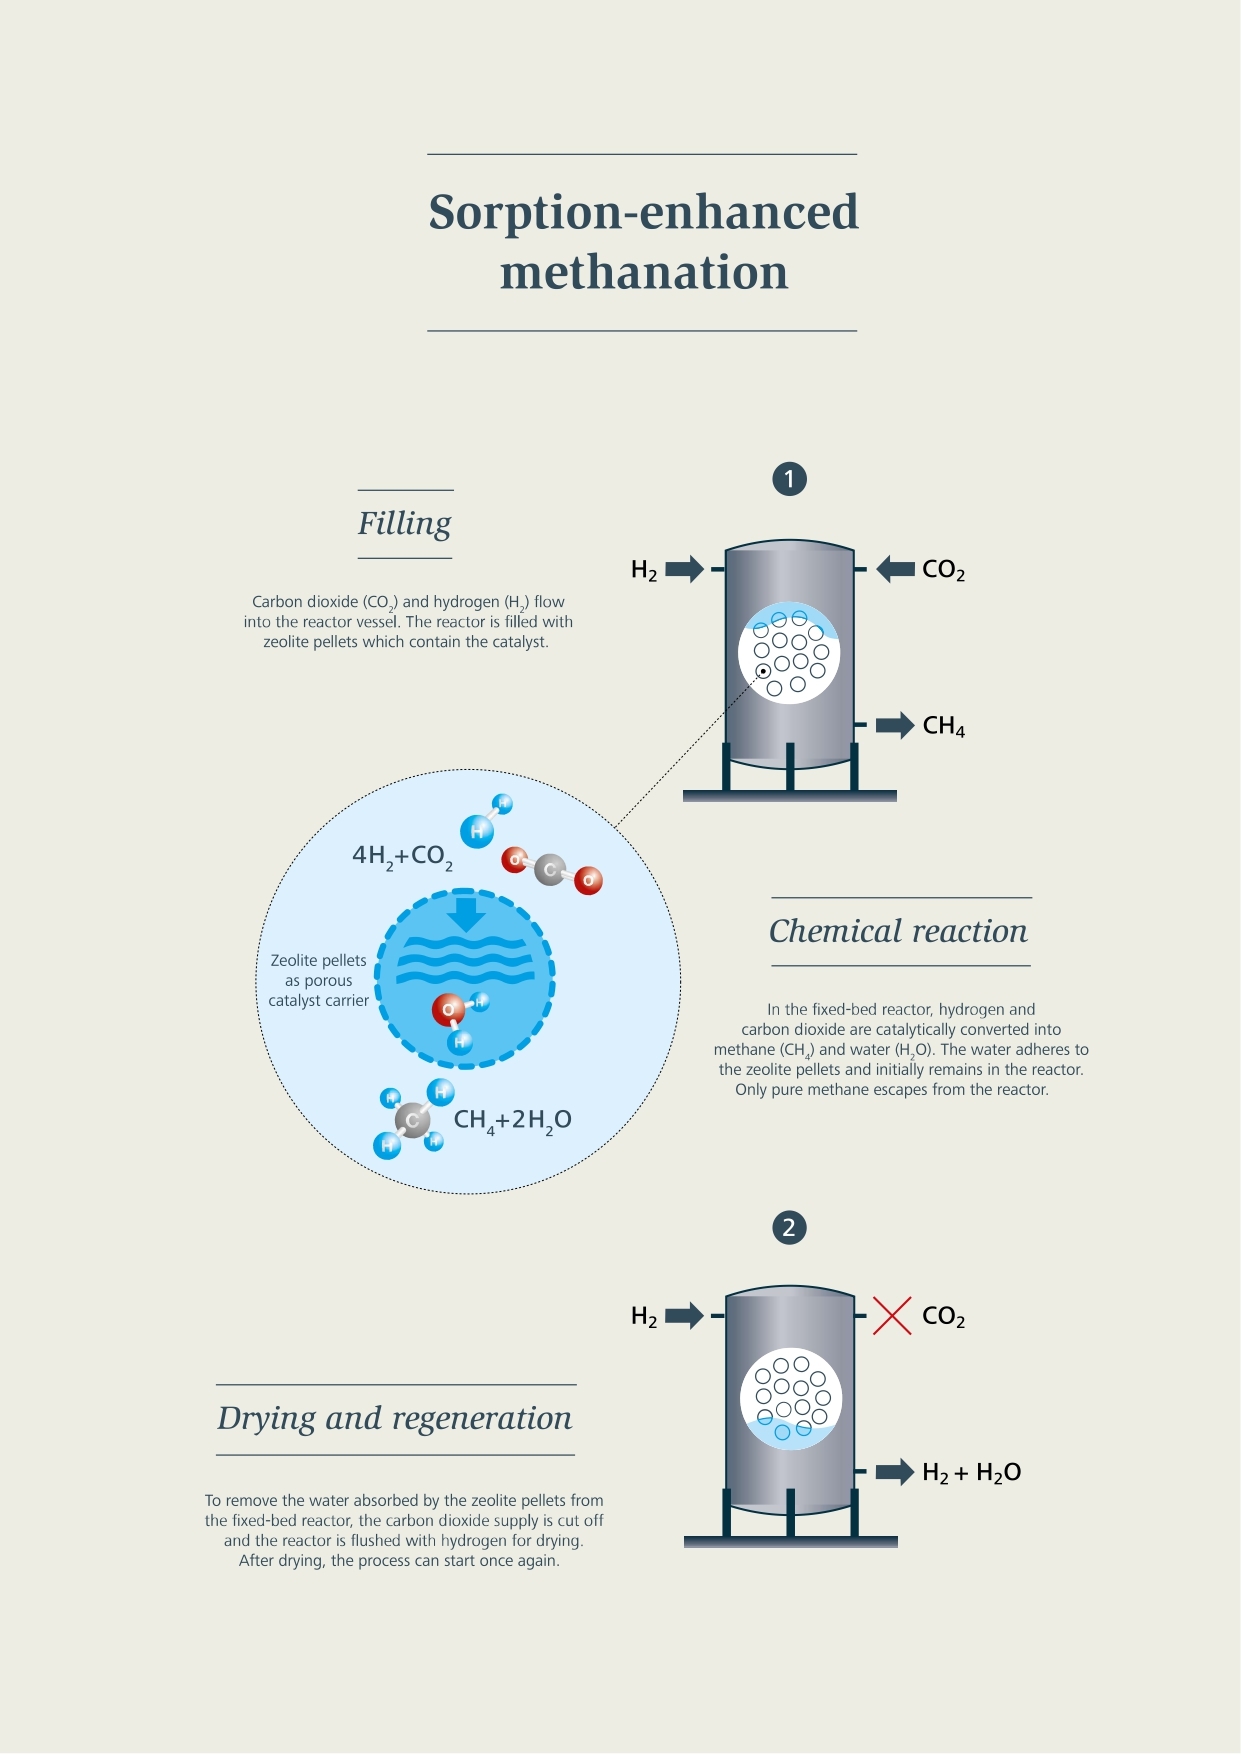 Metano Sintético: El Proceso de Metanización con Absorción: Relleno, Reacción Química, Secado y Regeneración, etc.